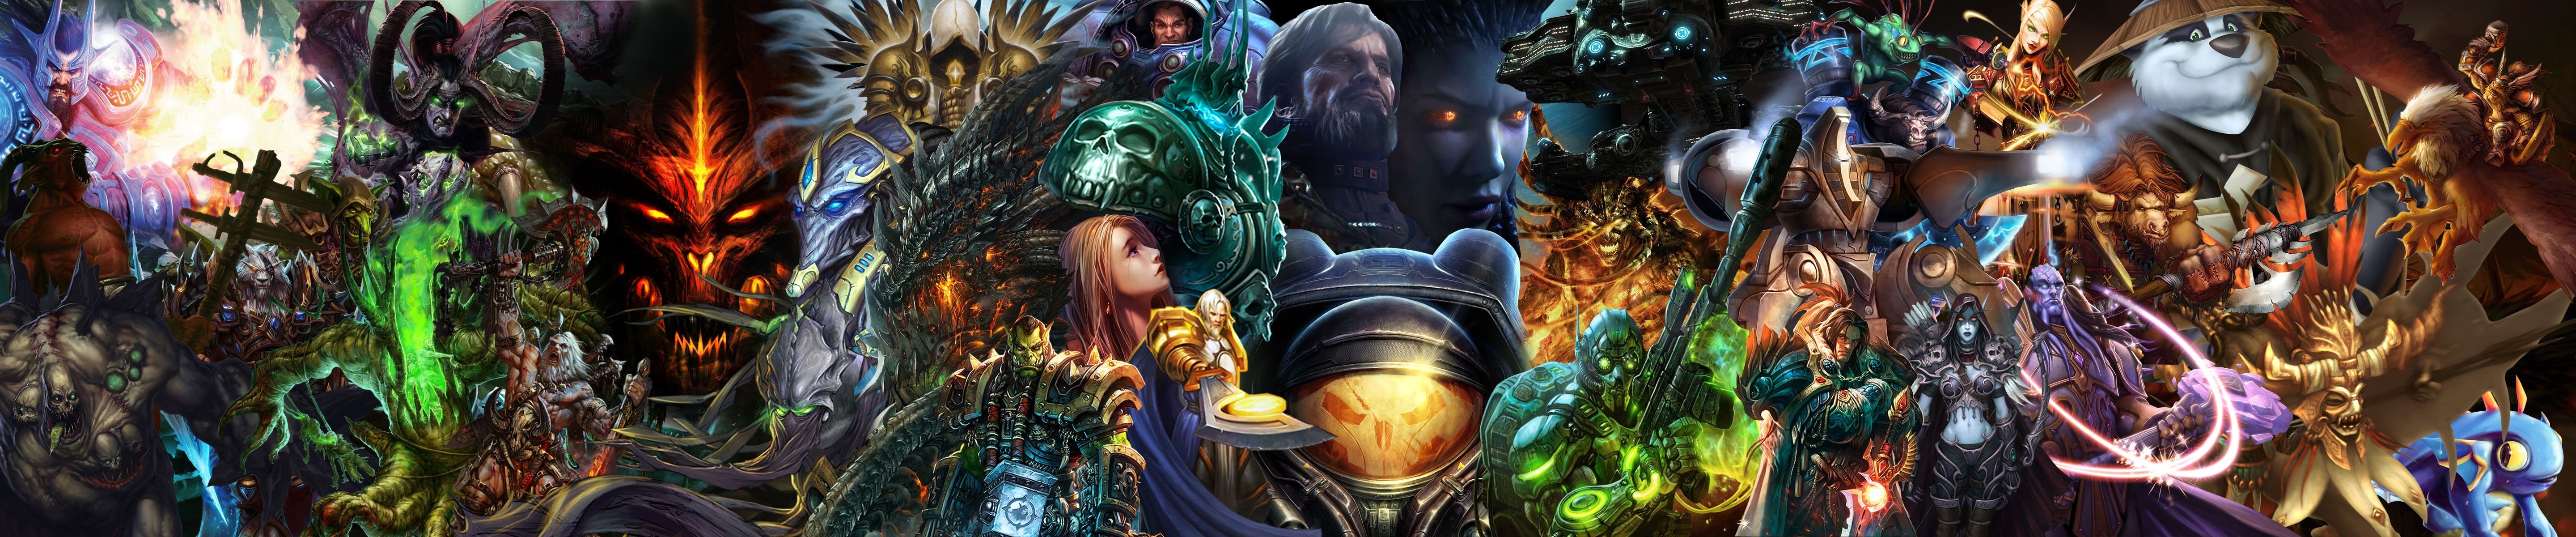 video game, world of warcraft, collage, warcraft